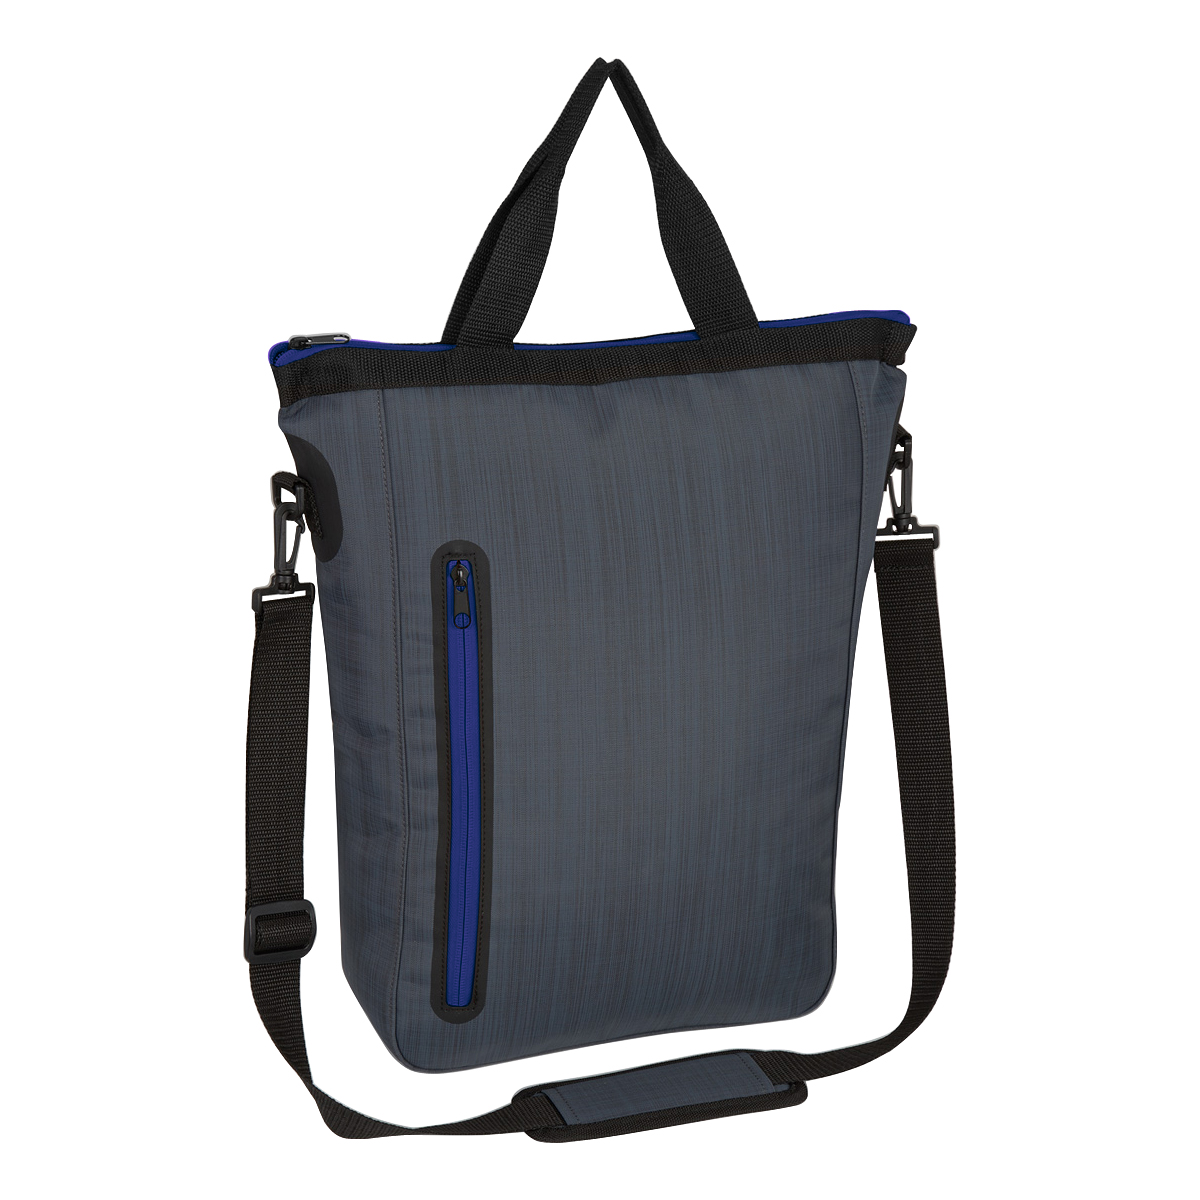 Blue Water-Resistant Sleek Bag